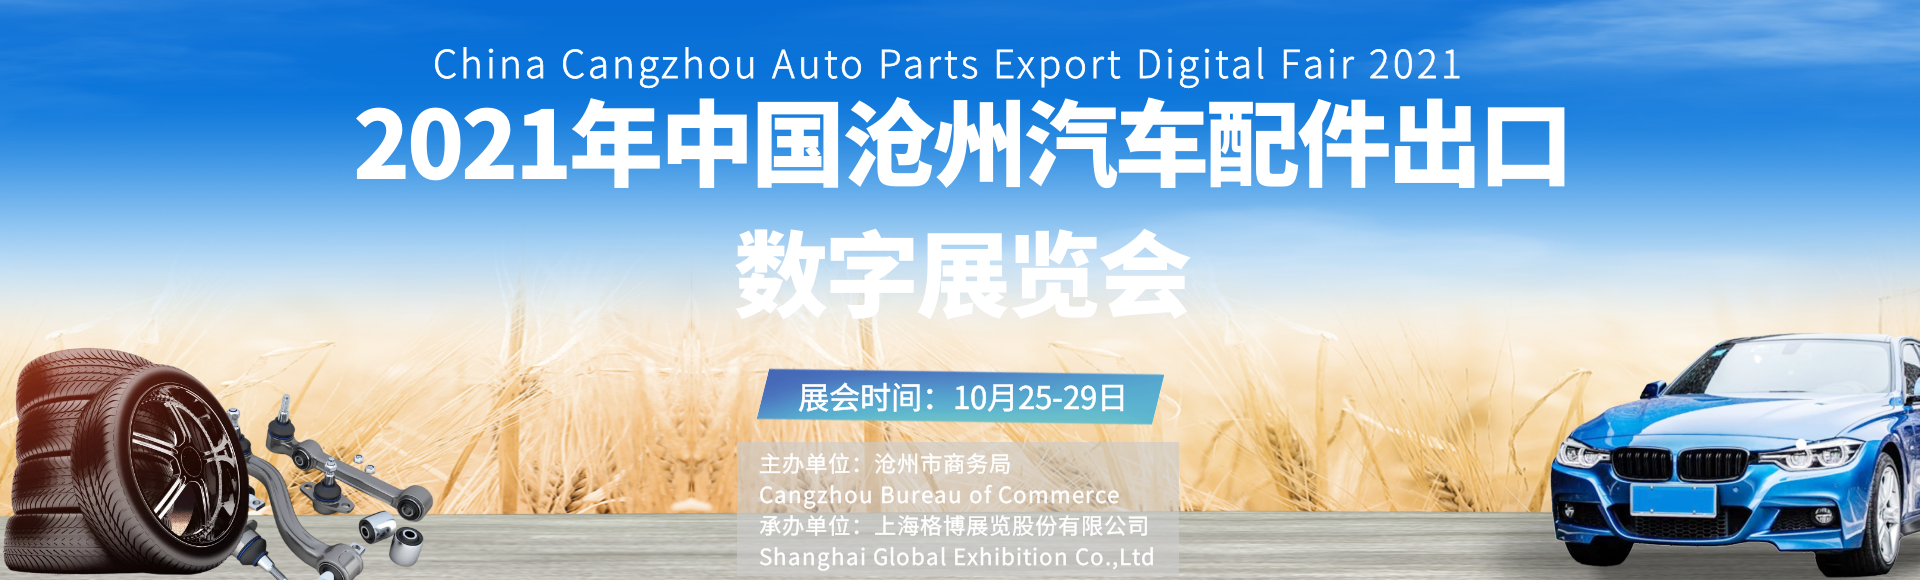 2021年<font color=#ff0000>中国</font>沧州汽车配件出口数字展览会即将启幕